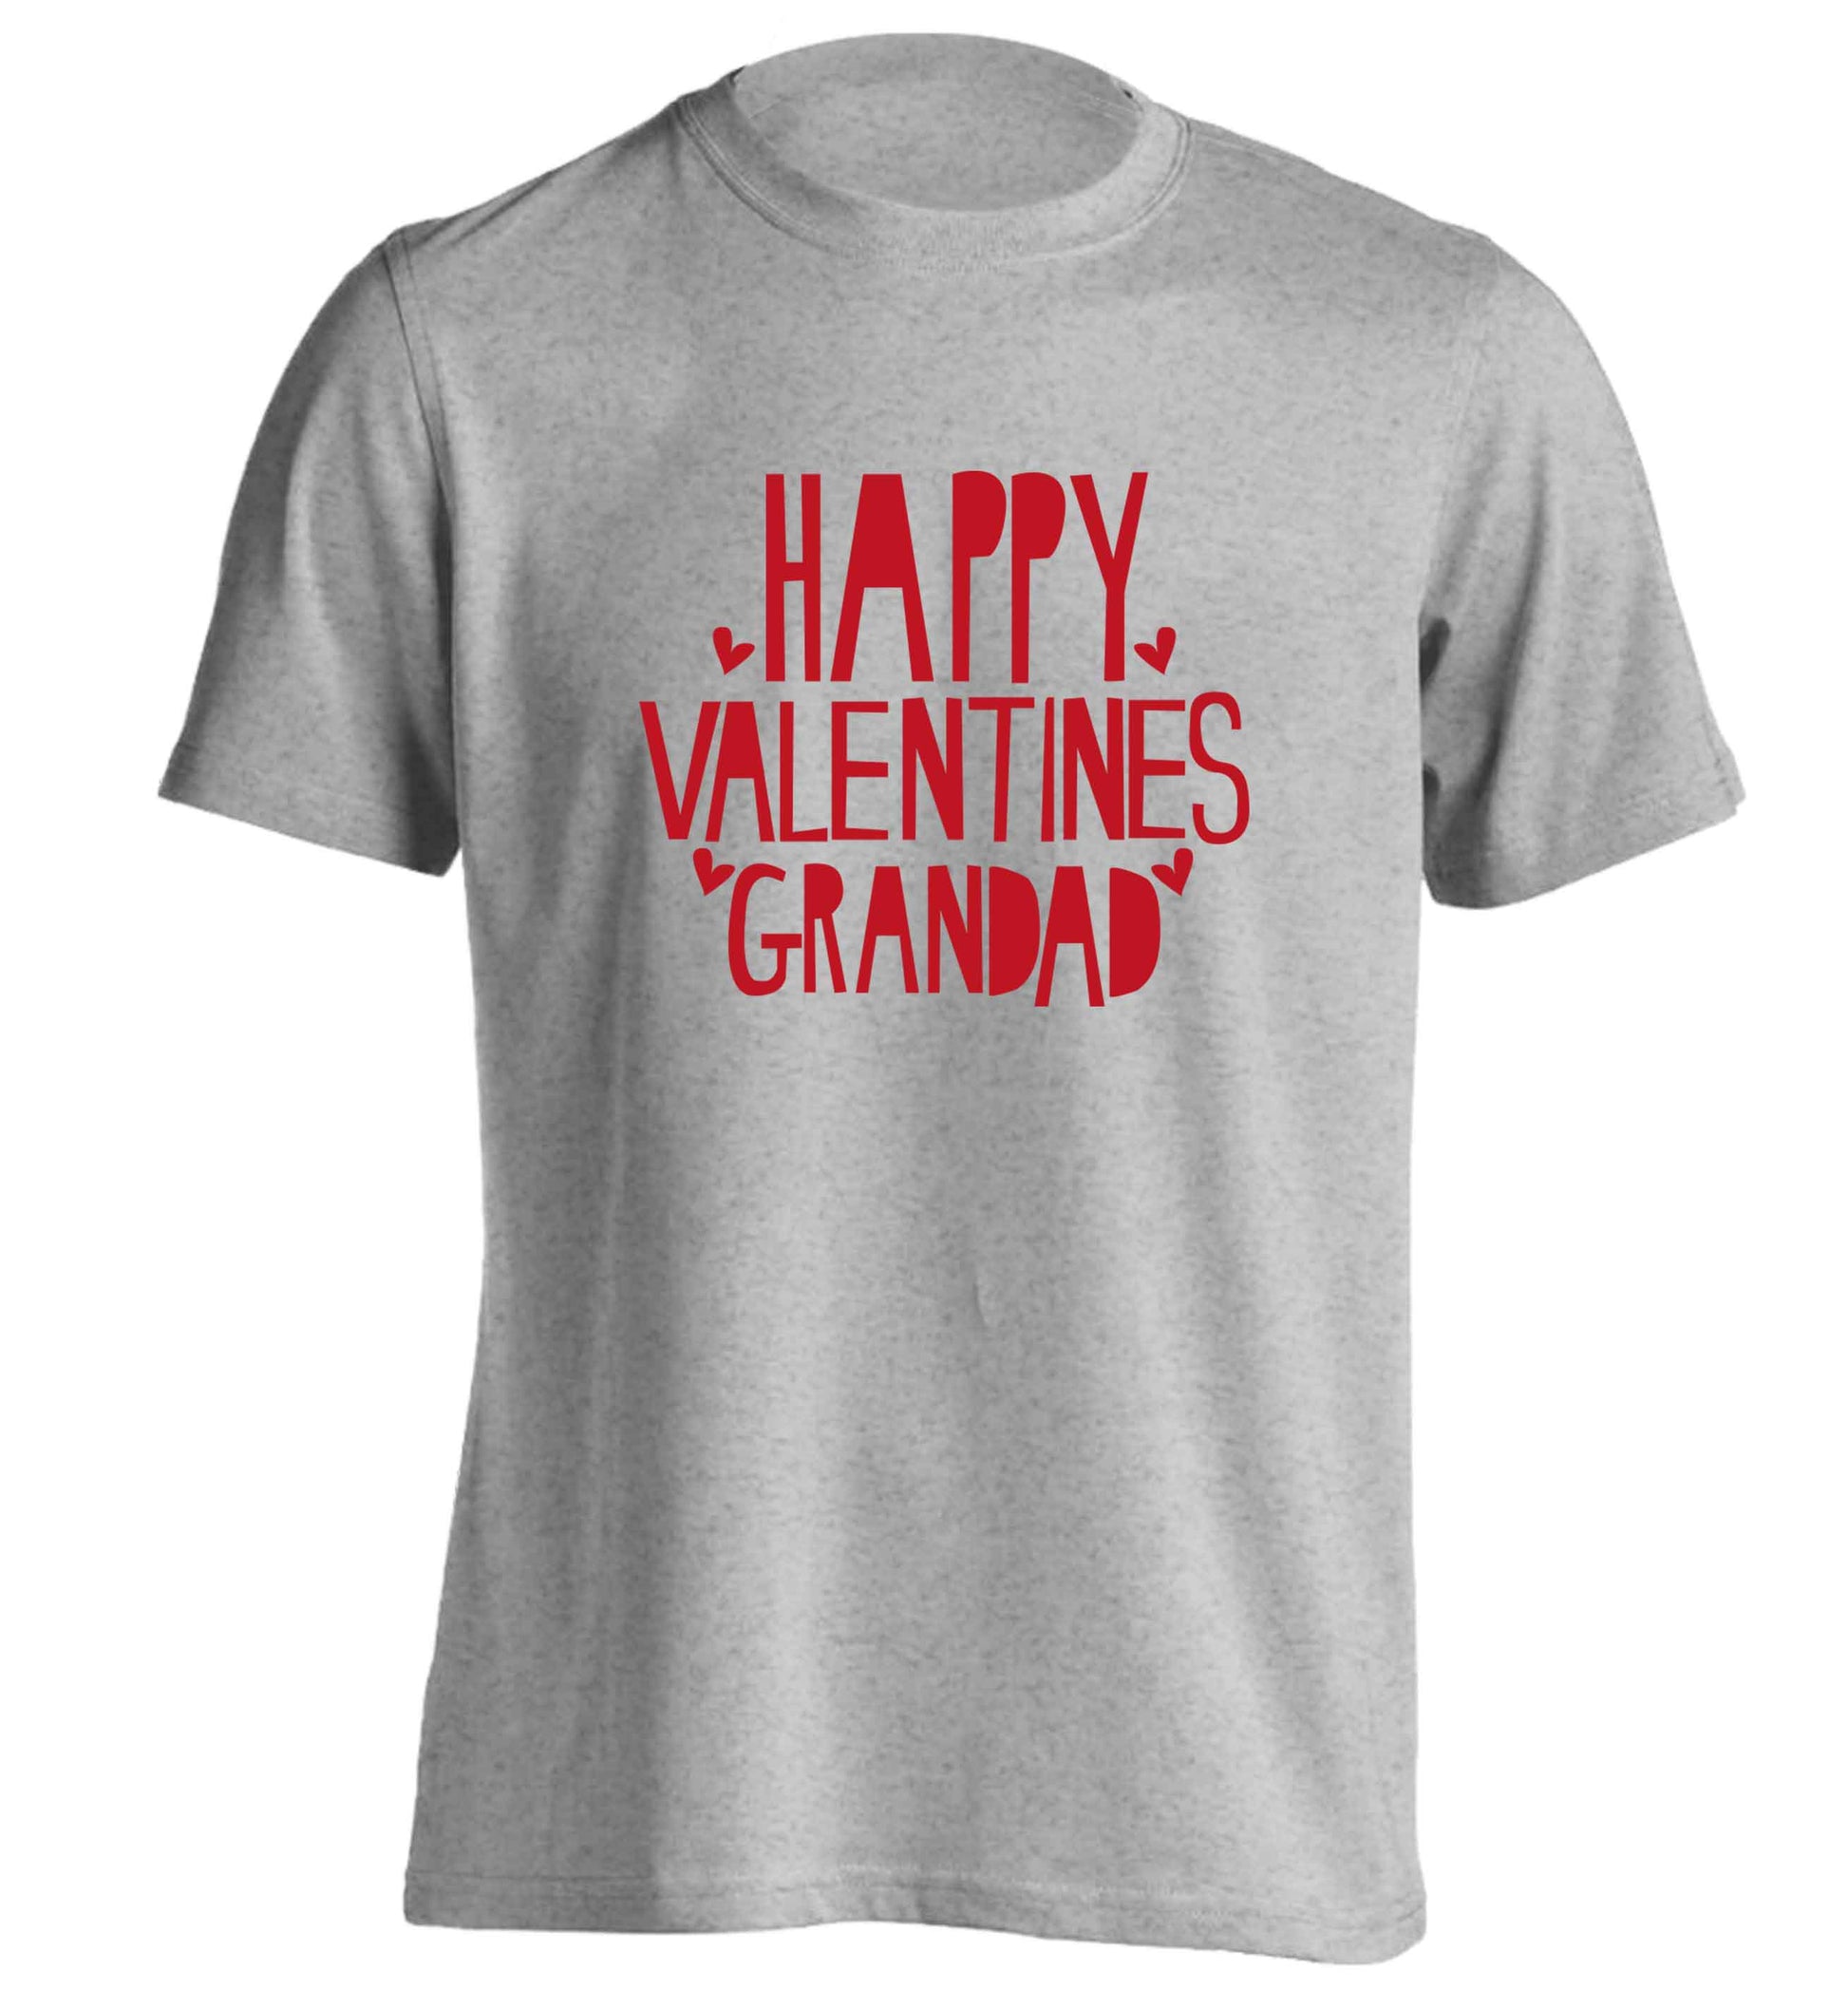 Happy valentines grandad adults unisex grey Tshirt 2XL